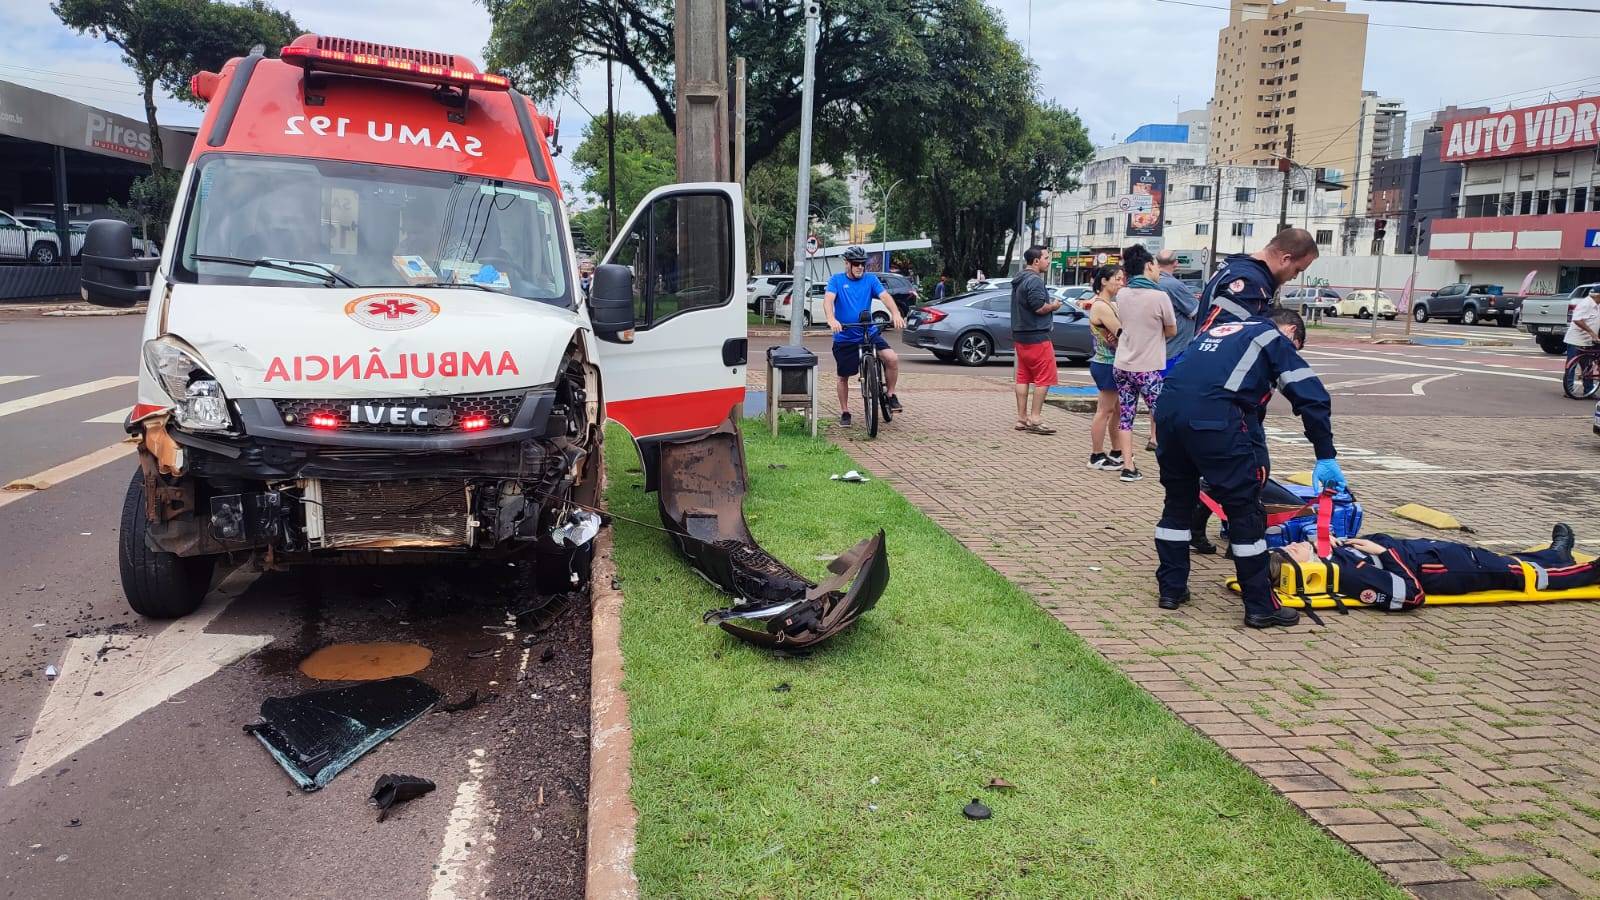 Ambulância do Samu se envolve em grave colisão de trânsito no centro de Cascavel